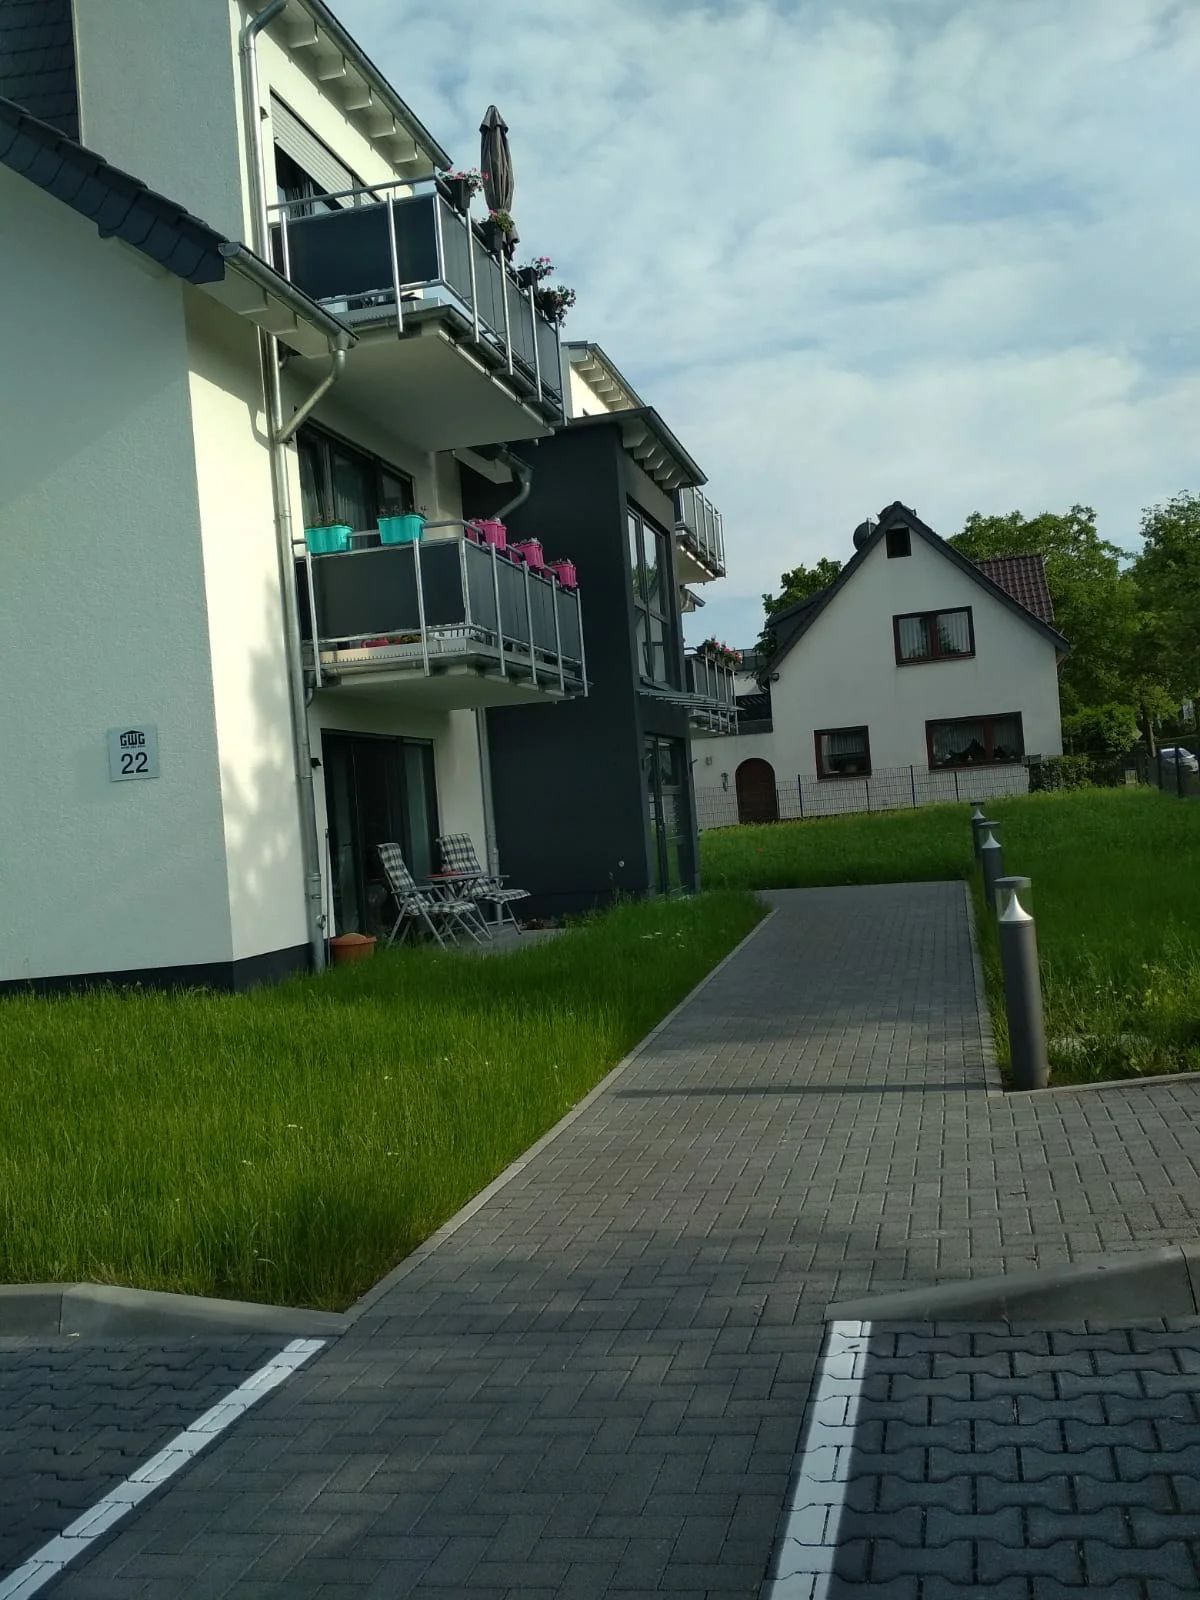 Как социальное жилье для самых бедных немцев выглядит изнутри: реальные фото